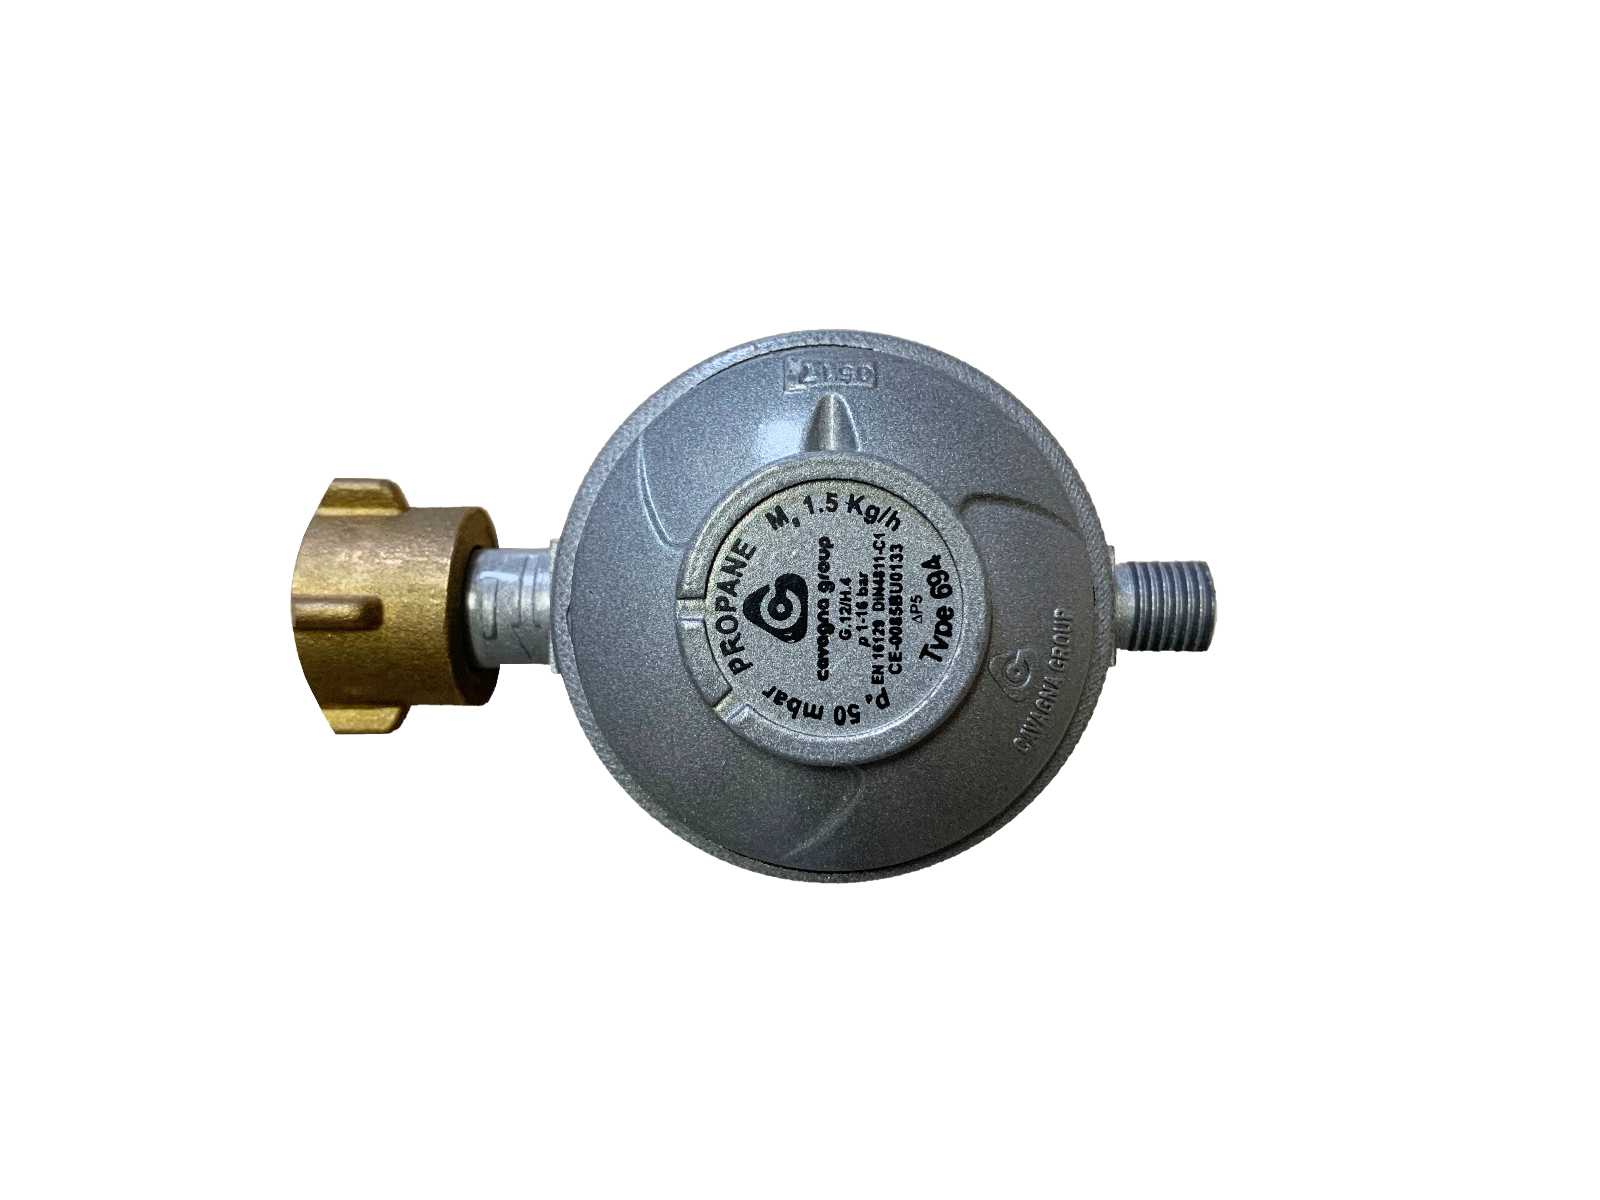 Gasdruckregler (Druckminderer) für Gasflasche, mit Schlauch